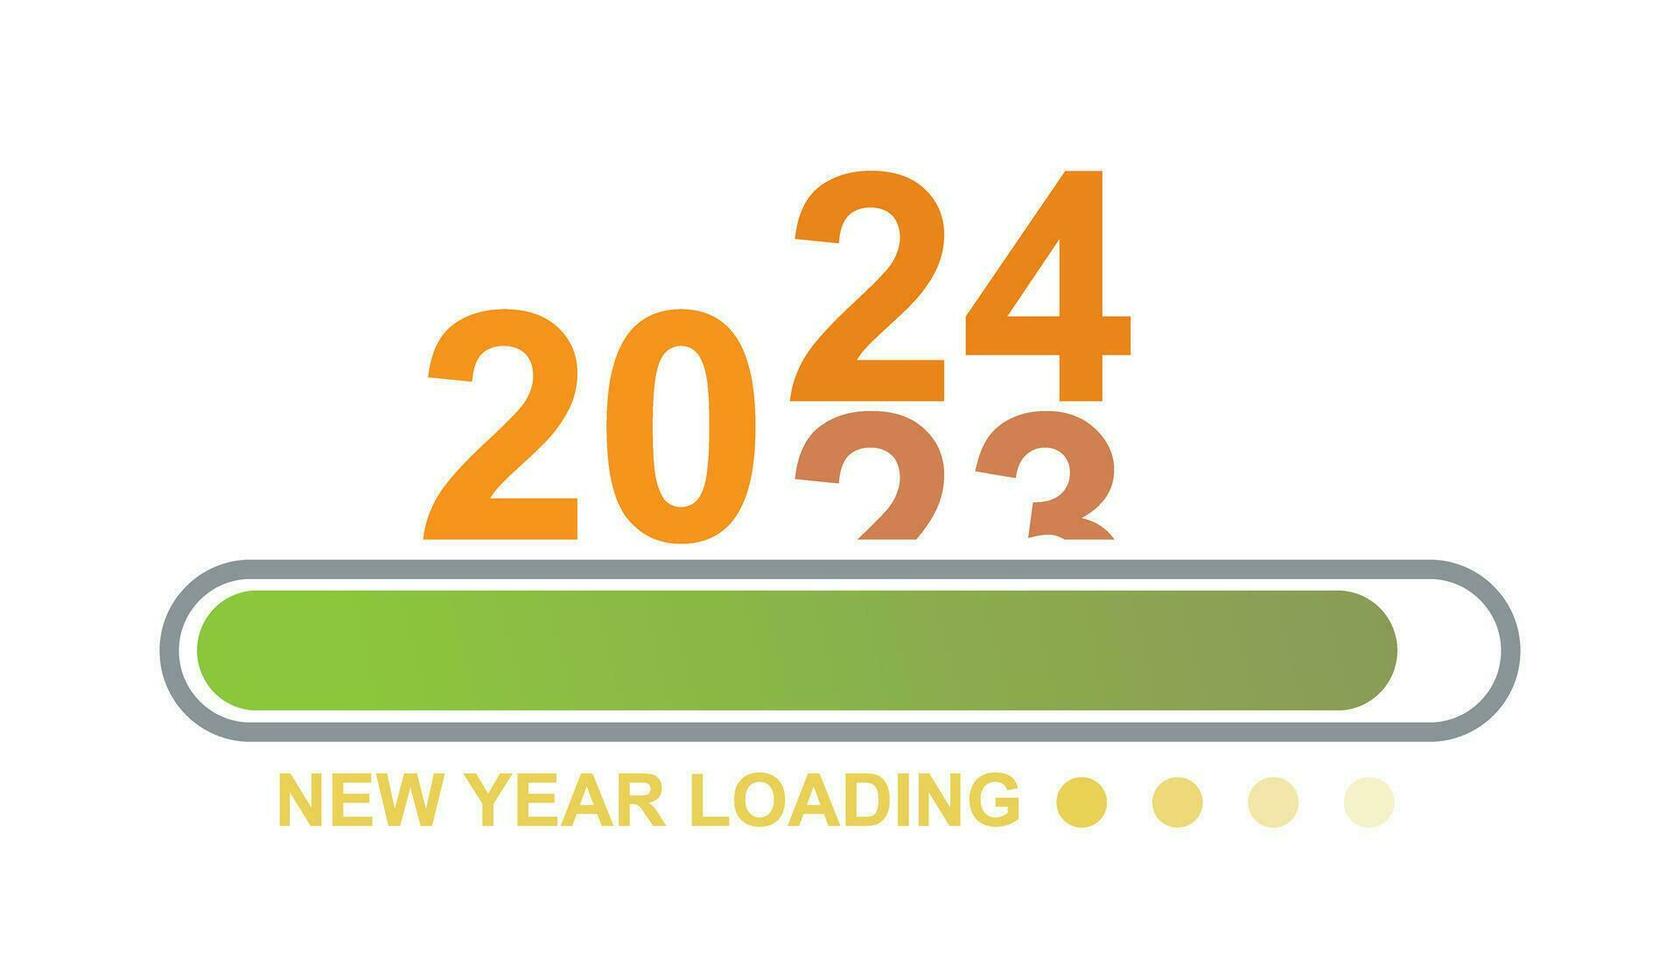 cargando 2023 a 2024 Progreso bar. contento nuevo año 2024 Bienvenido. año cambiando desde 2023 a 2024. final de 2023 y comenzando de 2024. casi alcanzando nuevo año deseos 2024. comienzo objetivo y planificación. vector